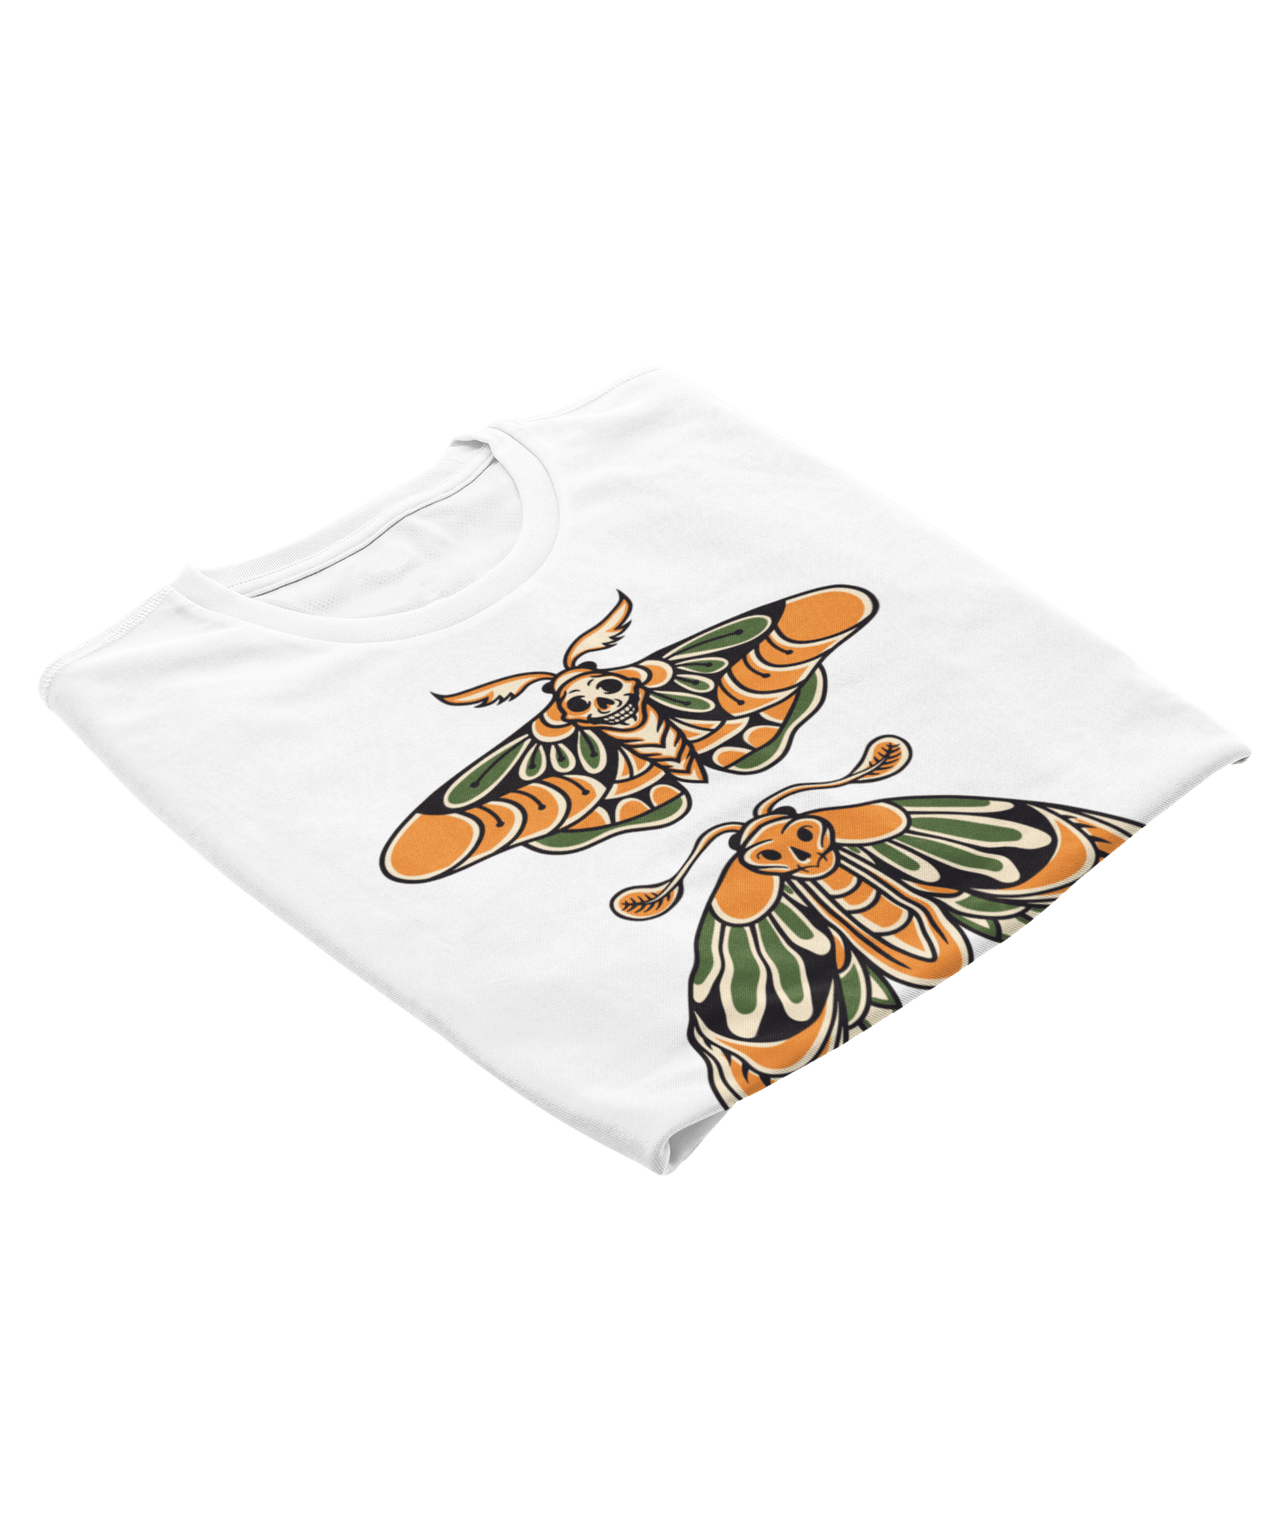 Butterfly Tattoo Design Adult Unisex T-Shirt For Men 8Ball